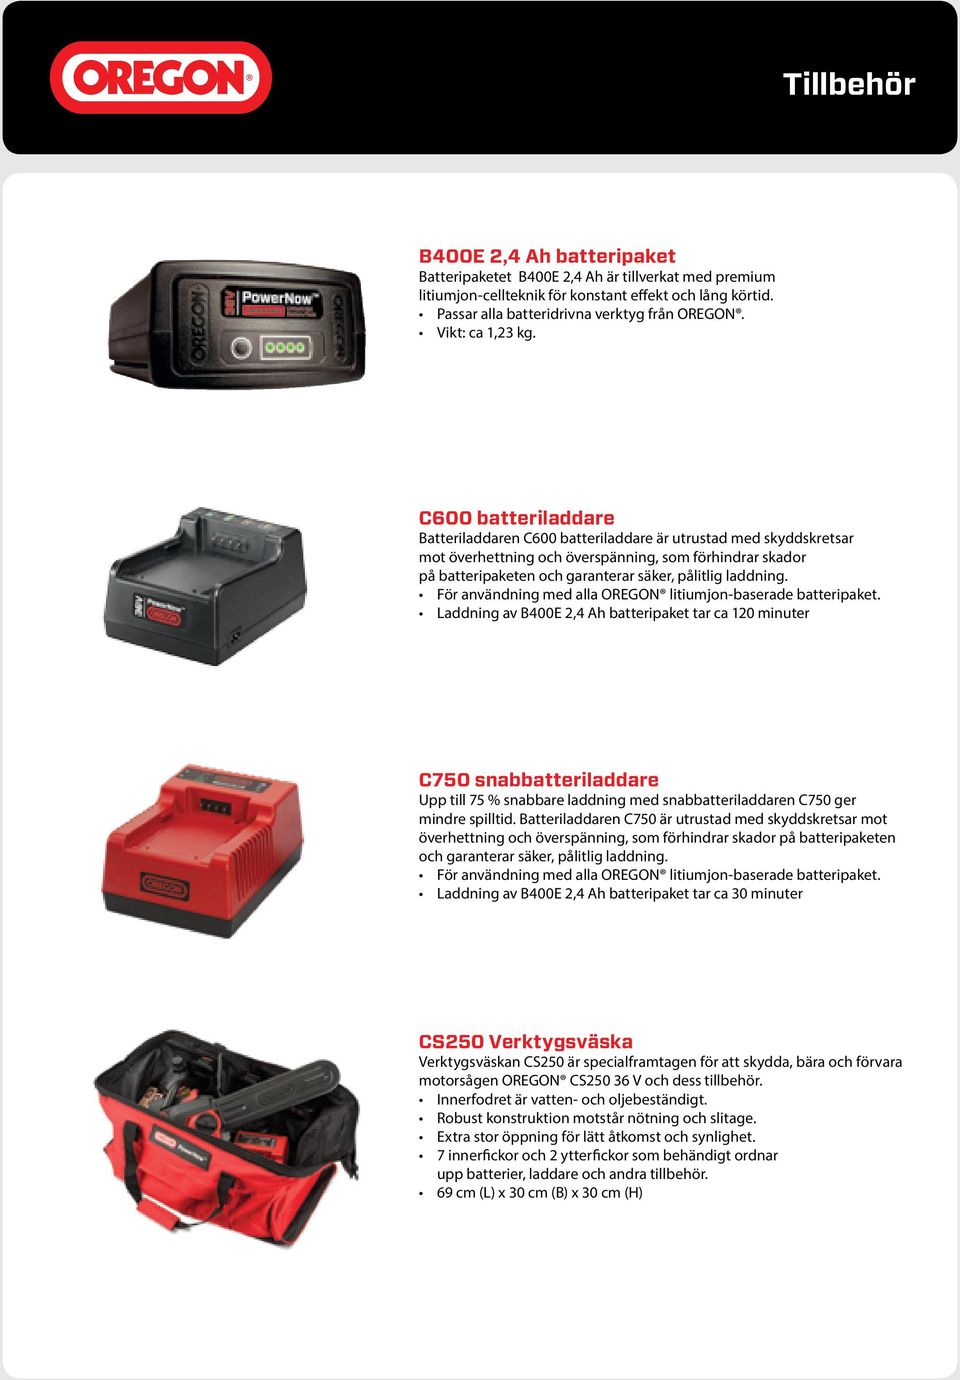 C600 batteriladdare Batteriladdaren C600 batteriladdare är utrustad med skyddskretsar mot överhettning och överspänning, som förhindrar skador på batteripaketen och garanterar säker, pålitlig